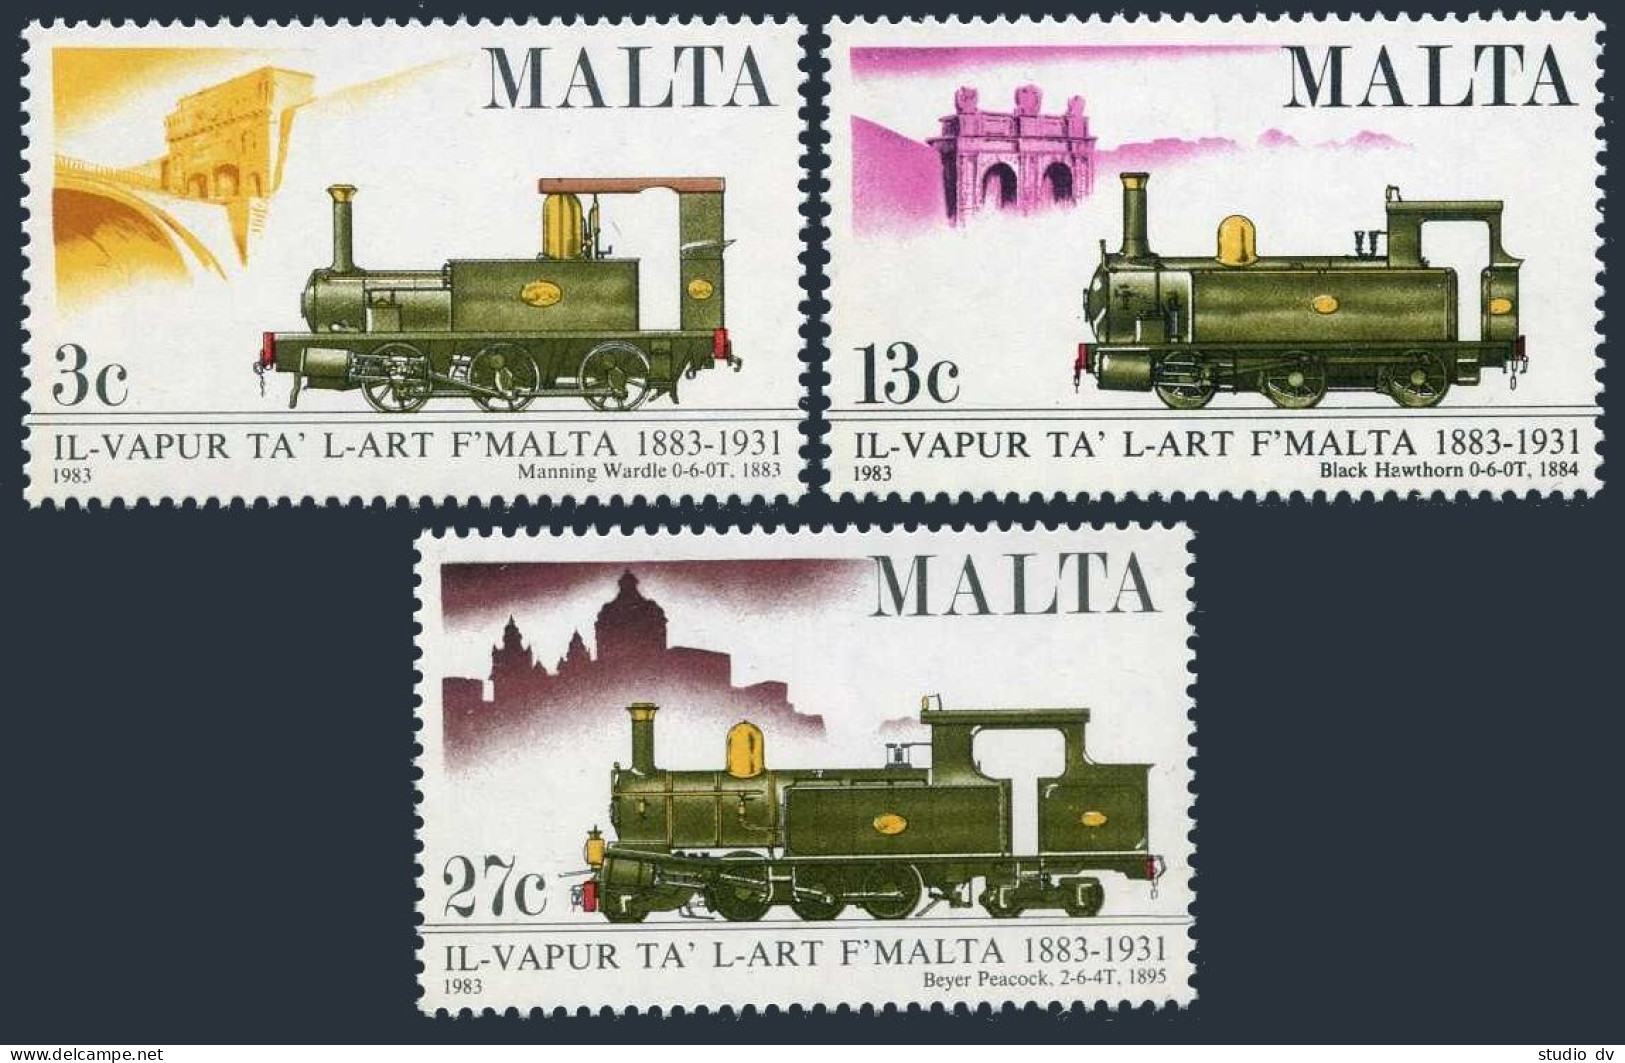 Malta 620-622, Lightly Hinged. Mi 673-675. Malta Railway-100, 1983. Locomotives. - Malte